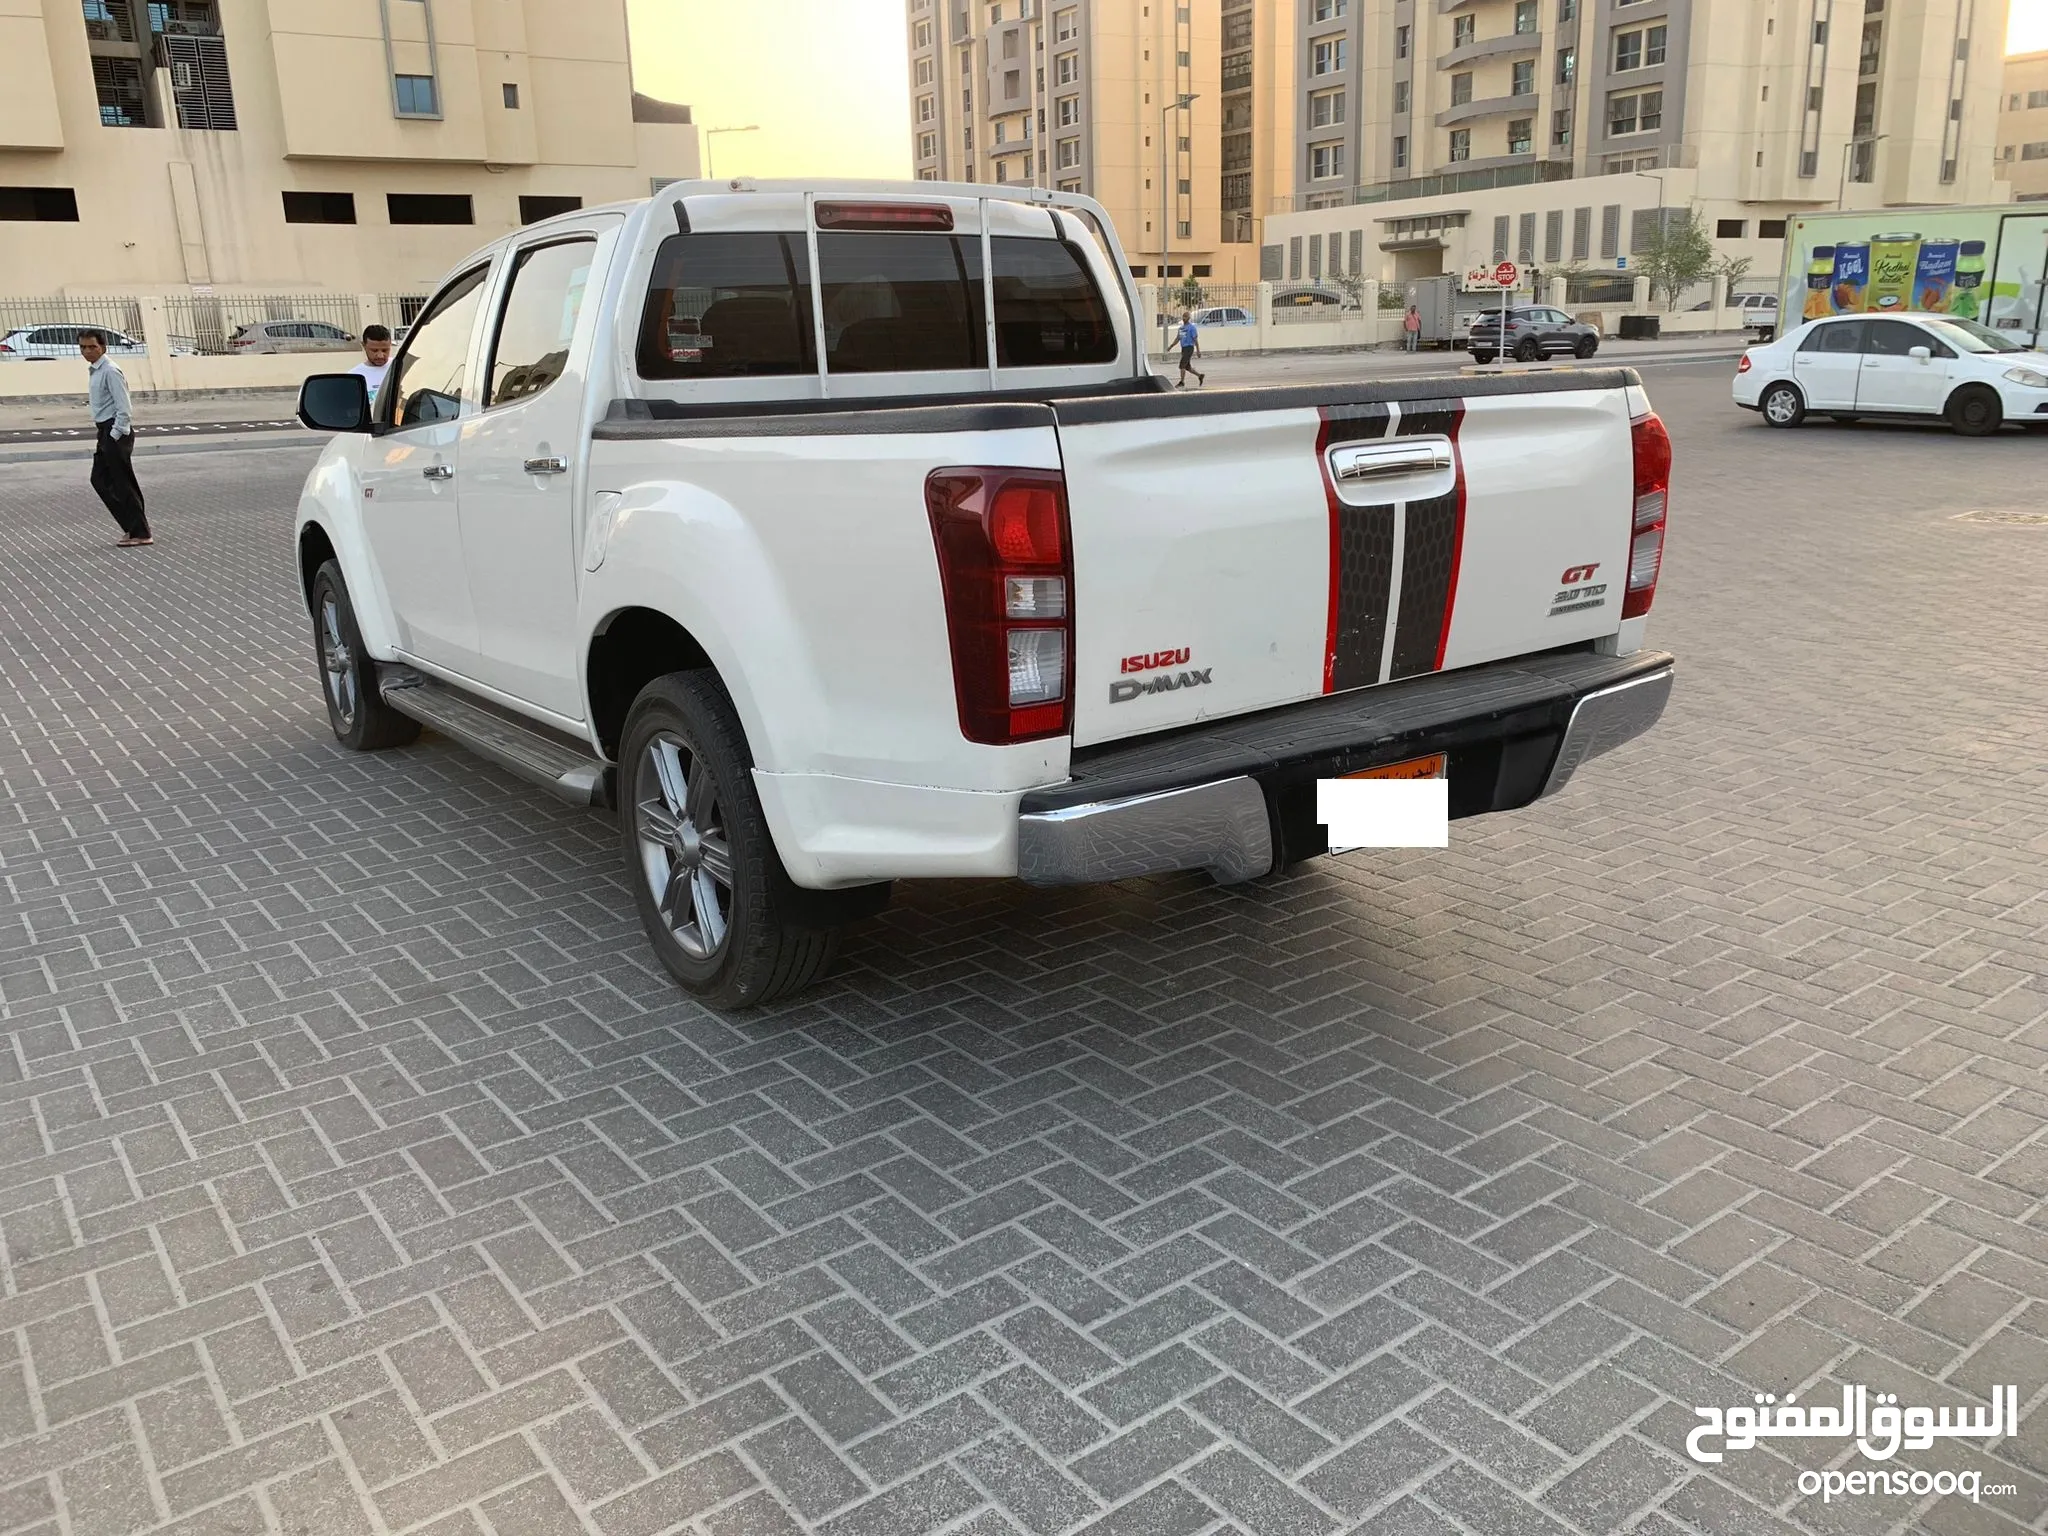 سيارات ايسوزو للبيع : ارخص الاسعار في البحرين : جميع موديلات سيارة ايسوزو :  مستعملة وجديدة | السوق المفتوح